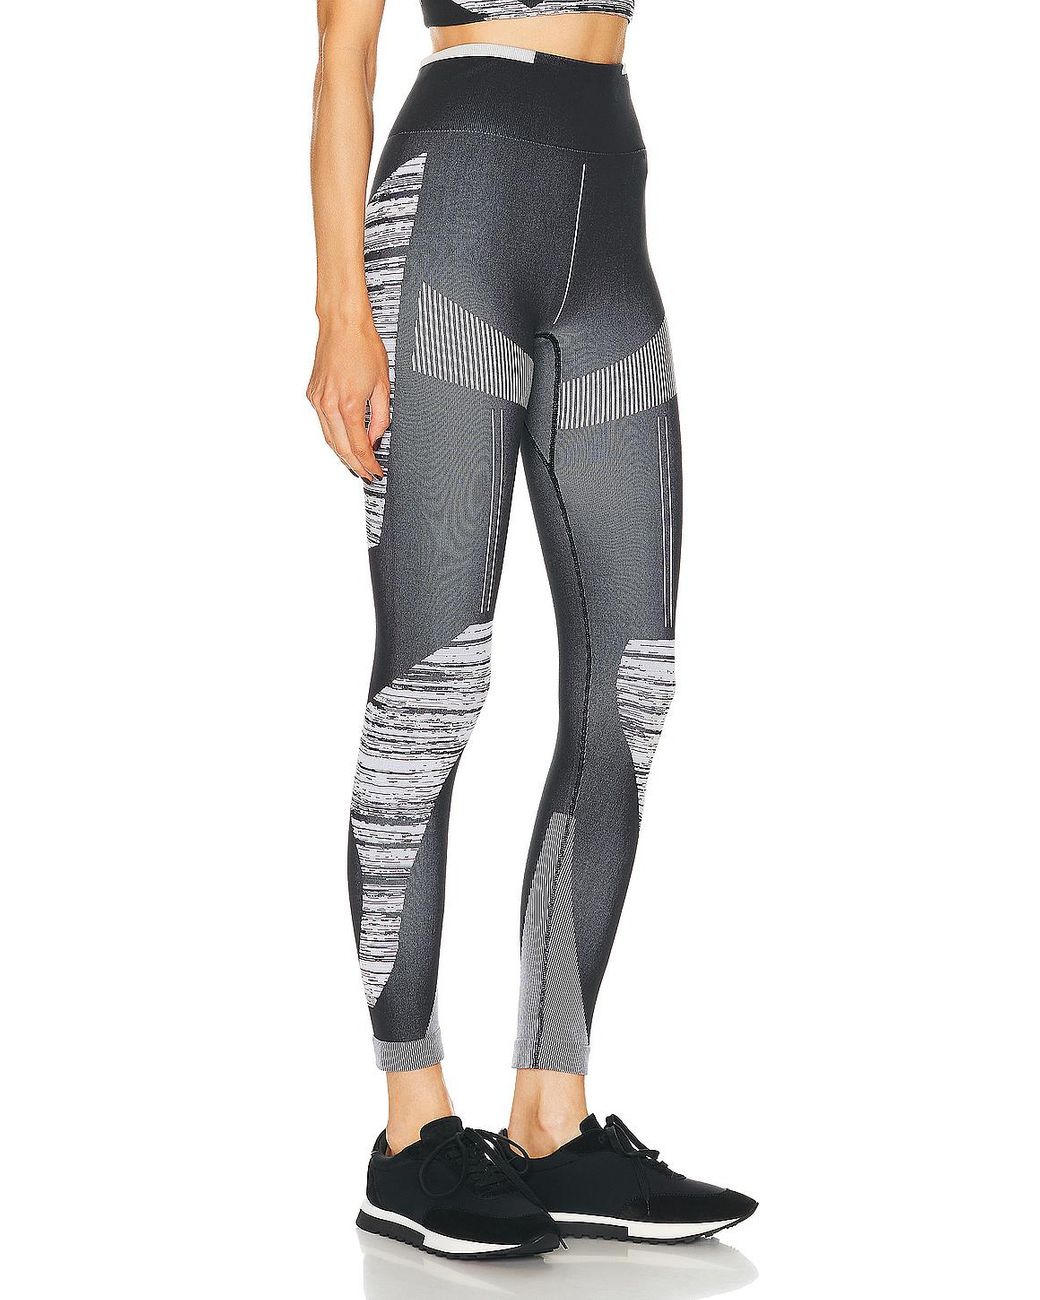 Adidas By Stella McCartney True Strength Yoga Tights - Black